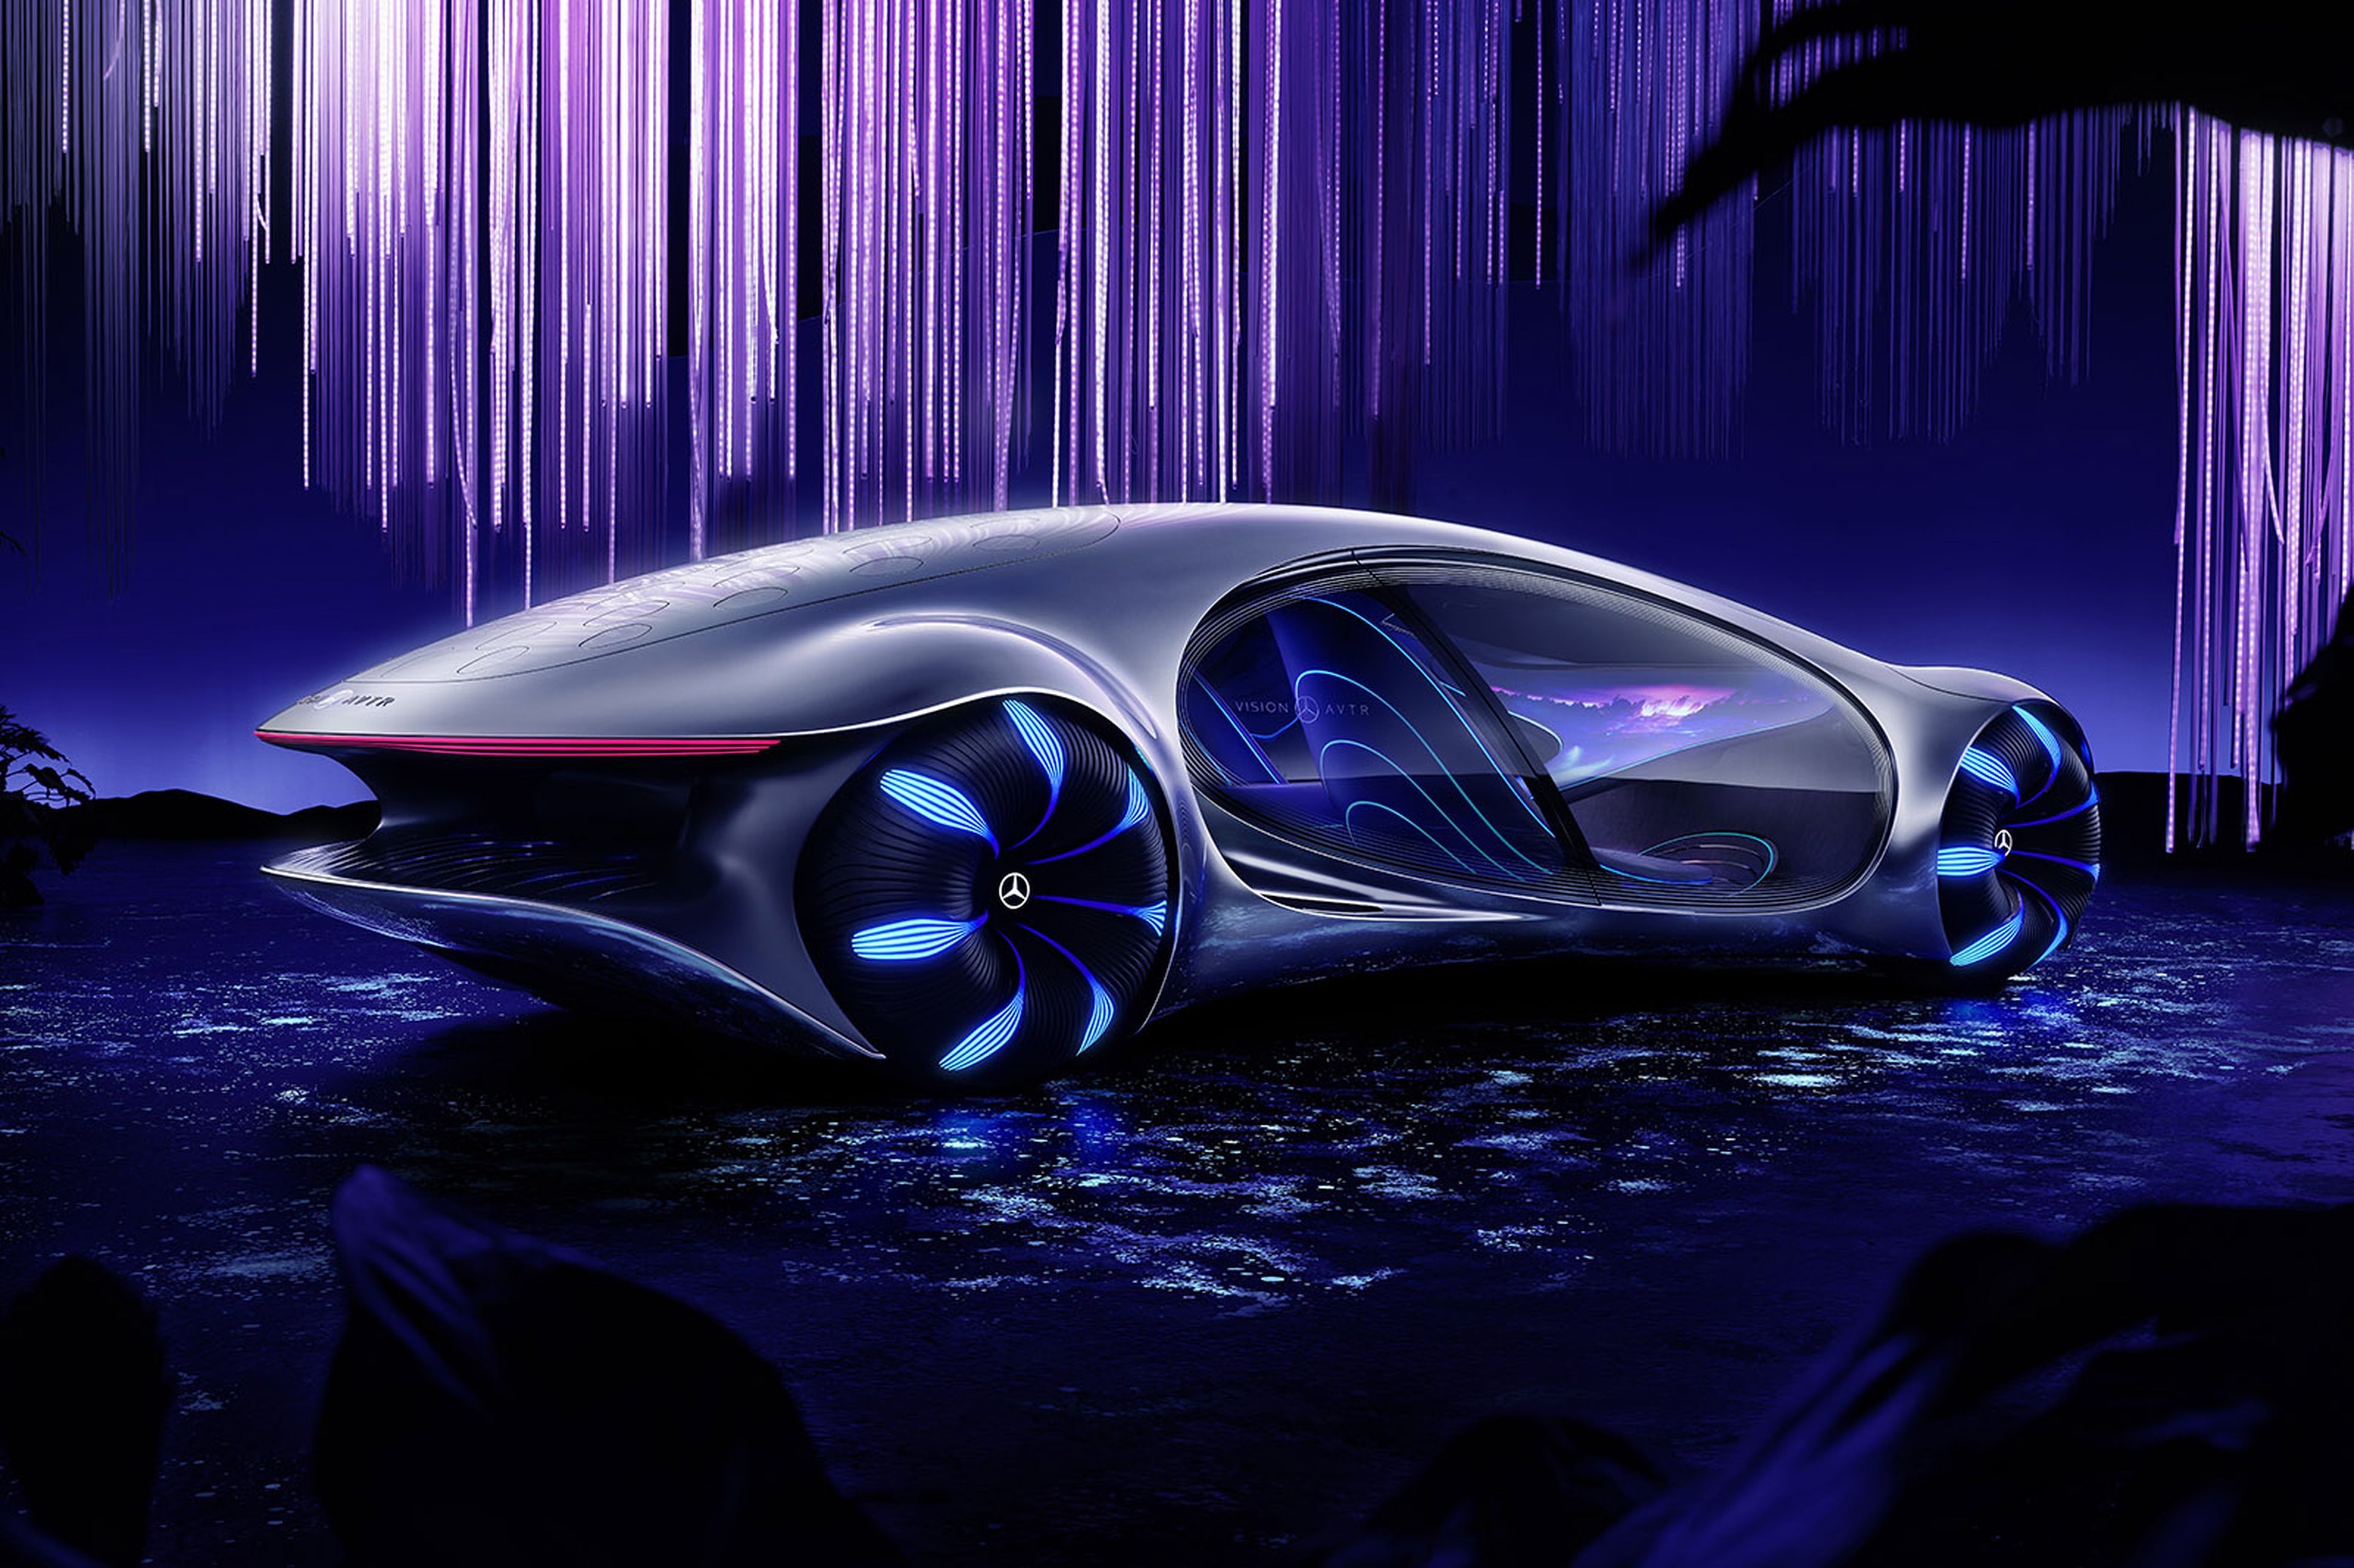 Mercedes Benz presenta su nuevo concepto de coche autónomo inspirado en el mundo de Avatar | Computer Hoy